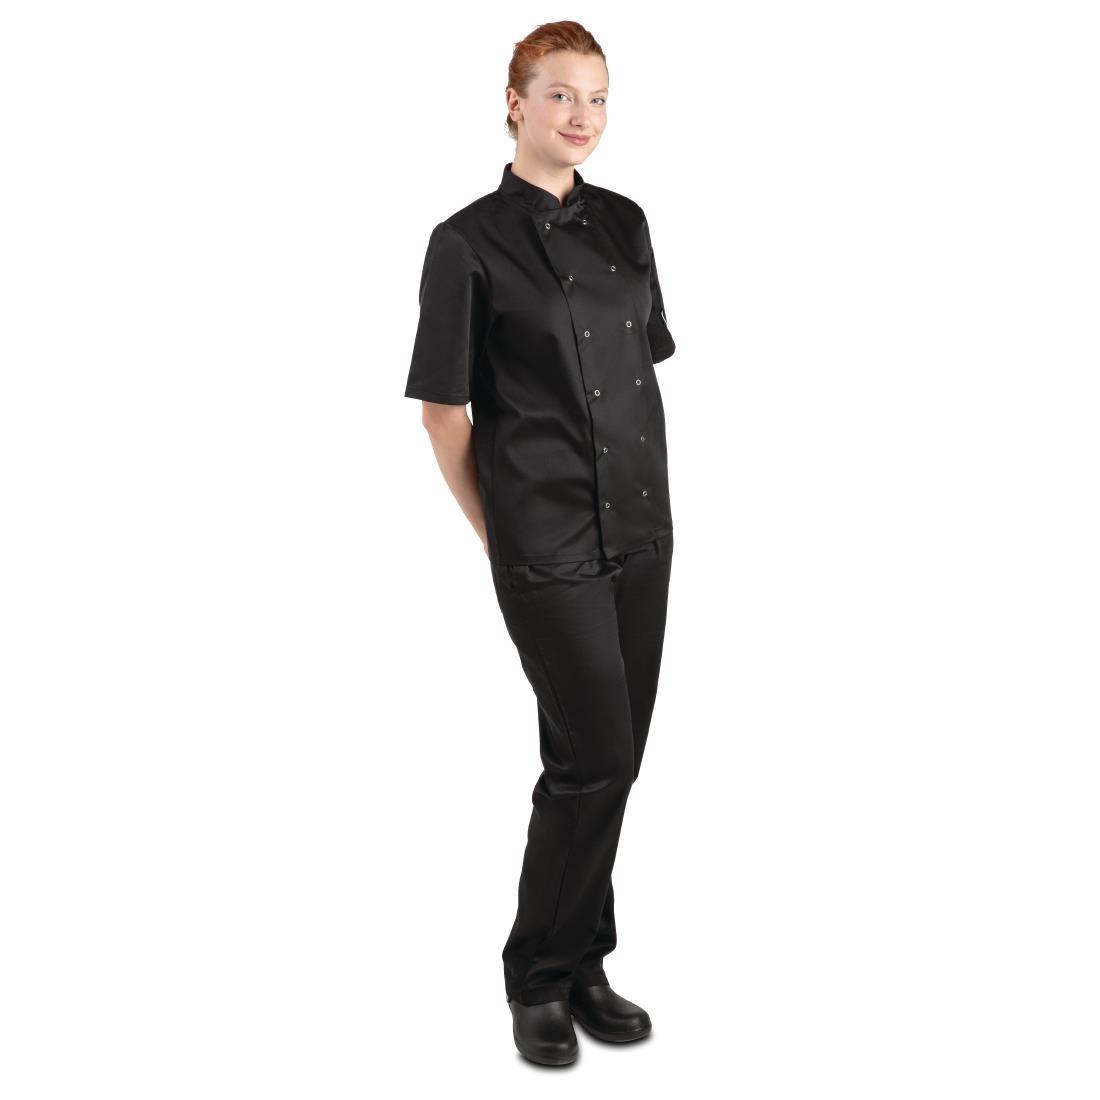 Whites Vegas Unisex Chefs Jacket Short Sleeve Black 4XL - A439-4XL  - 6